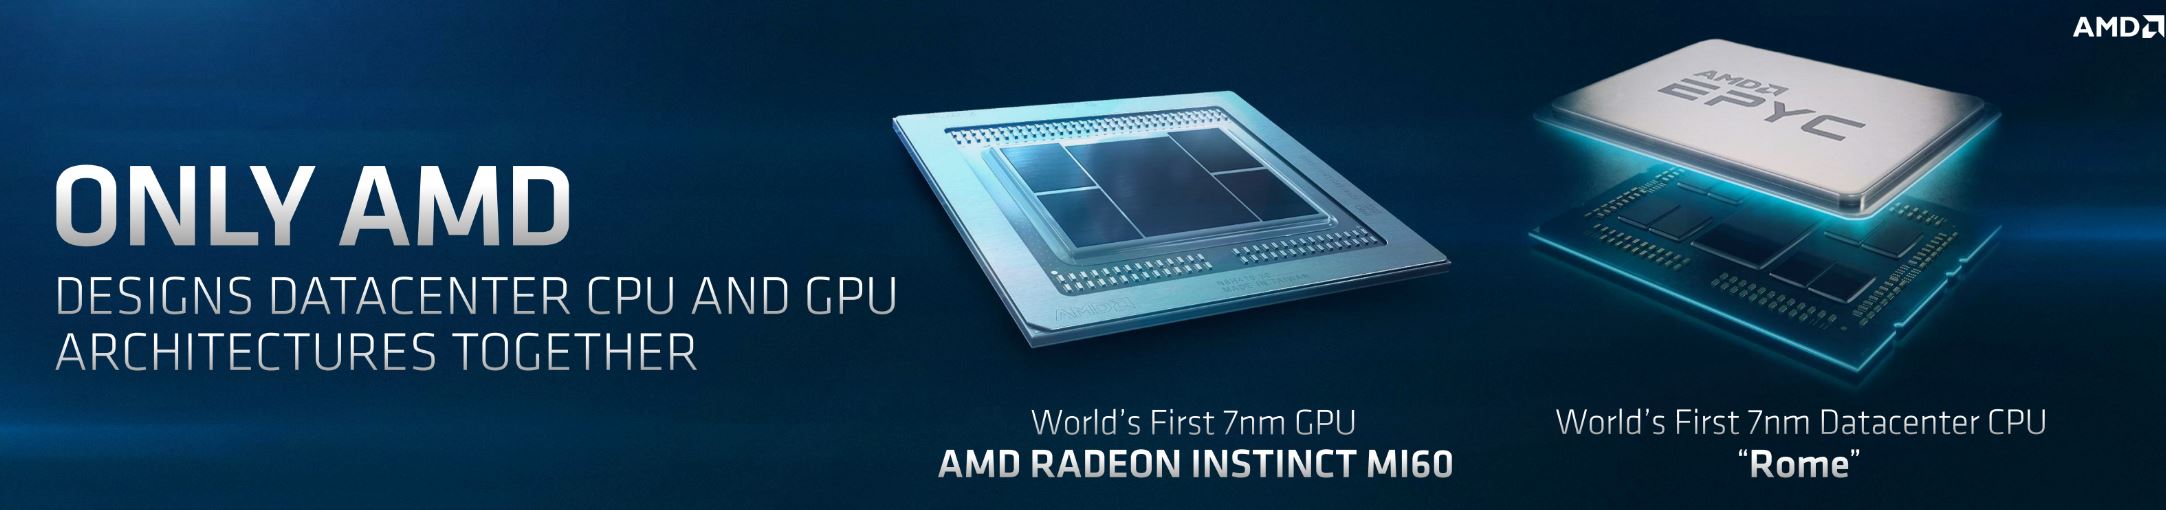 خطة AMD للمنافسة علي 7nm، هل تكفي لزعزعة عرش Intel و NVIDIA؟